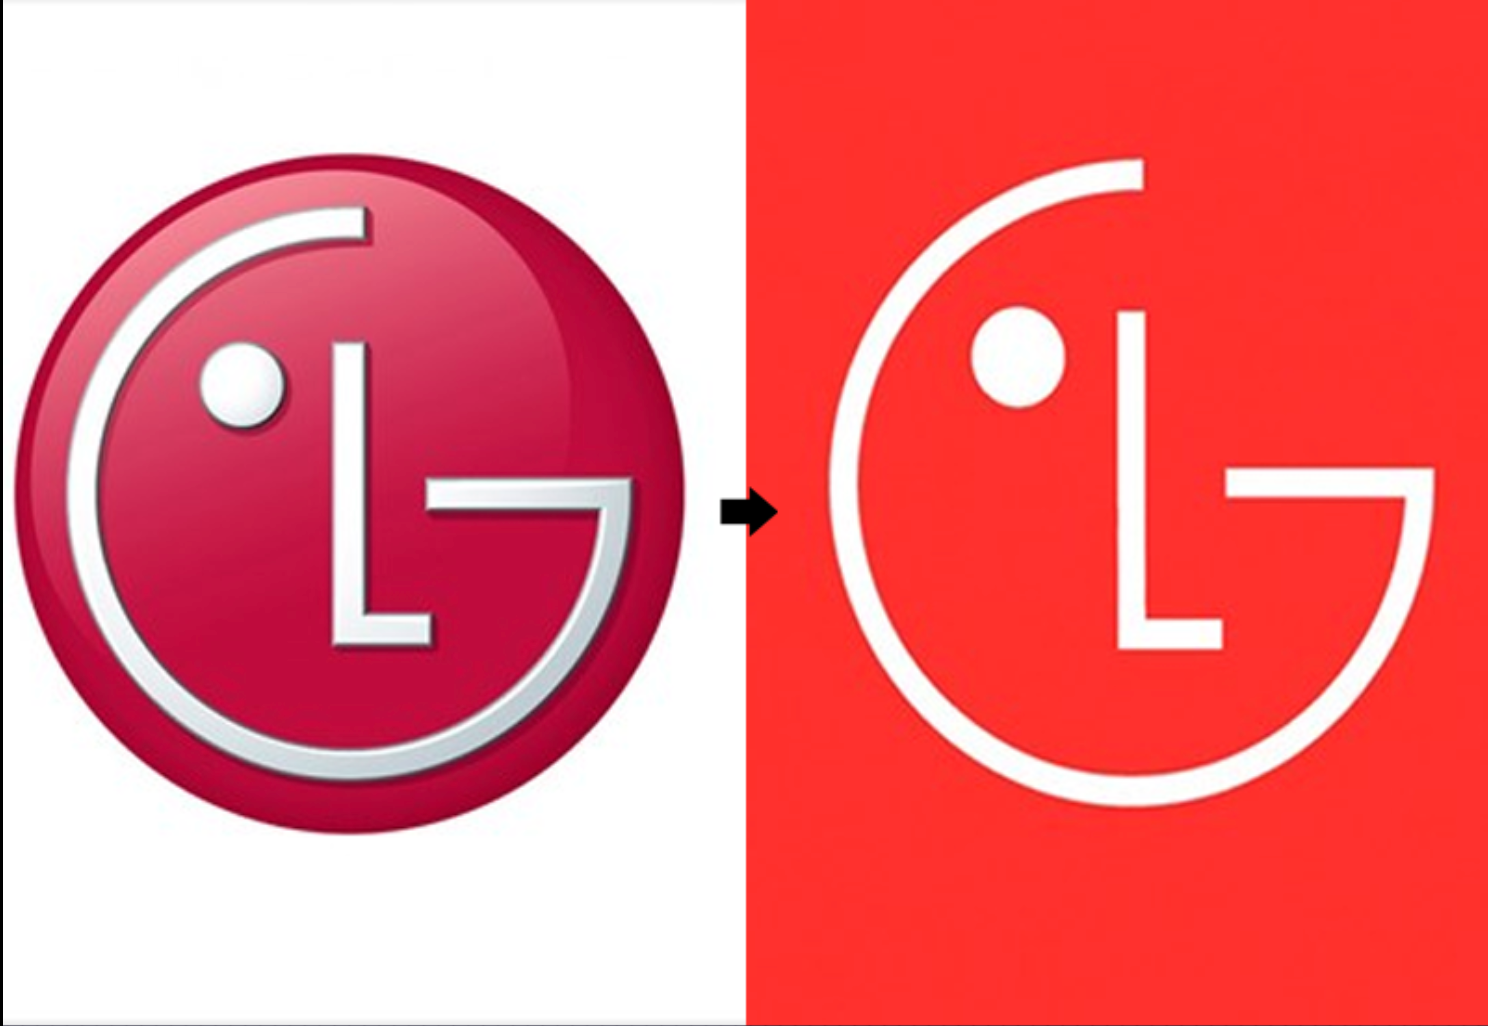 LG công bố bộ nhận diện thương hiệu mới, để thân thiện hơn với khách hàng trẻ  - Ảnh 1.